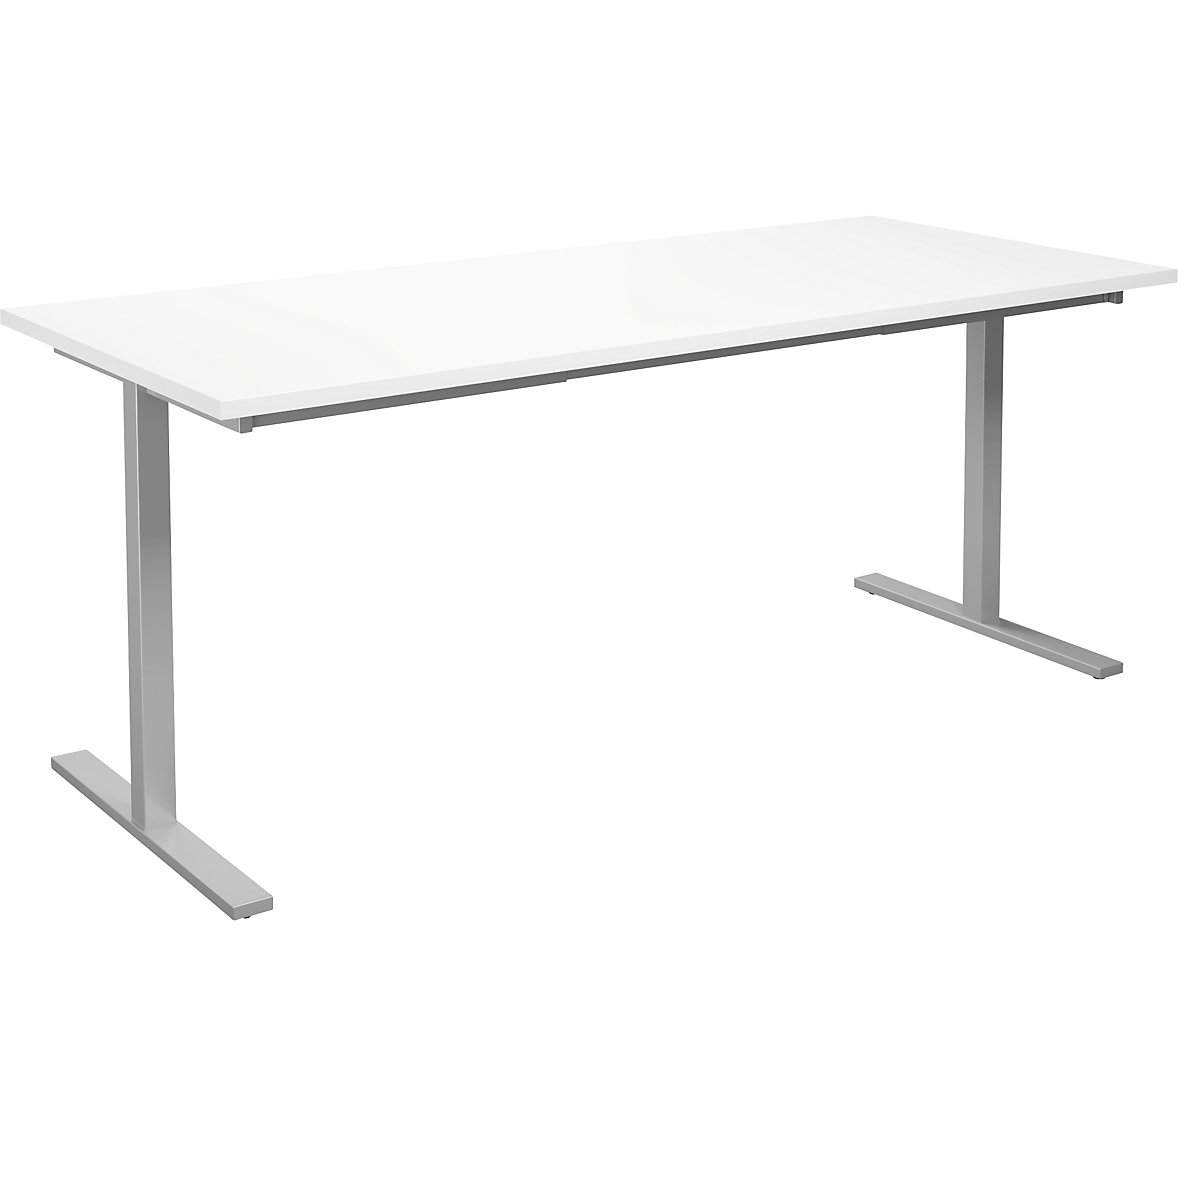 DUO-T multi-purpose desk, straight tabletop, WxD 1800 x 800 mm, white, silver-12